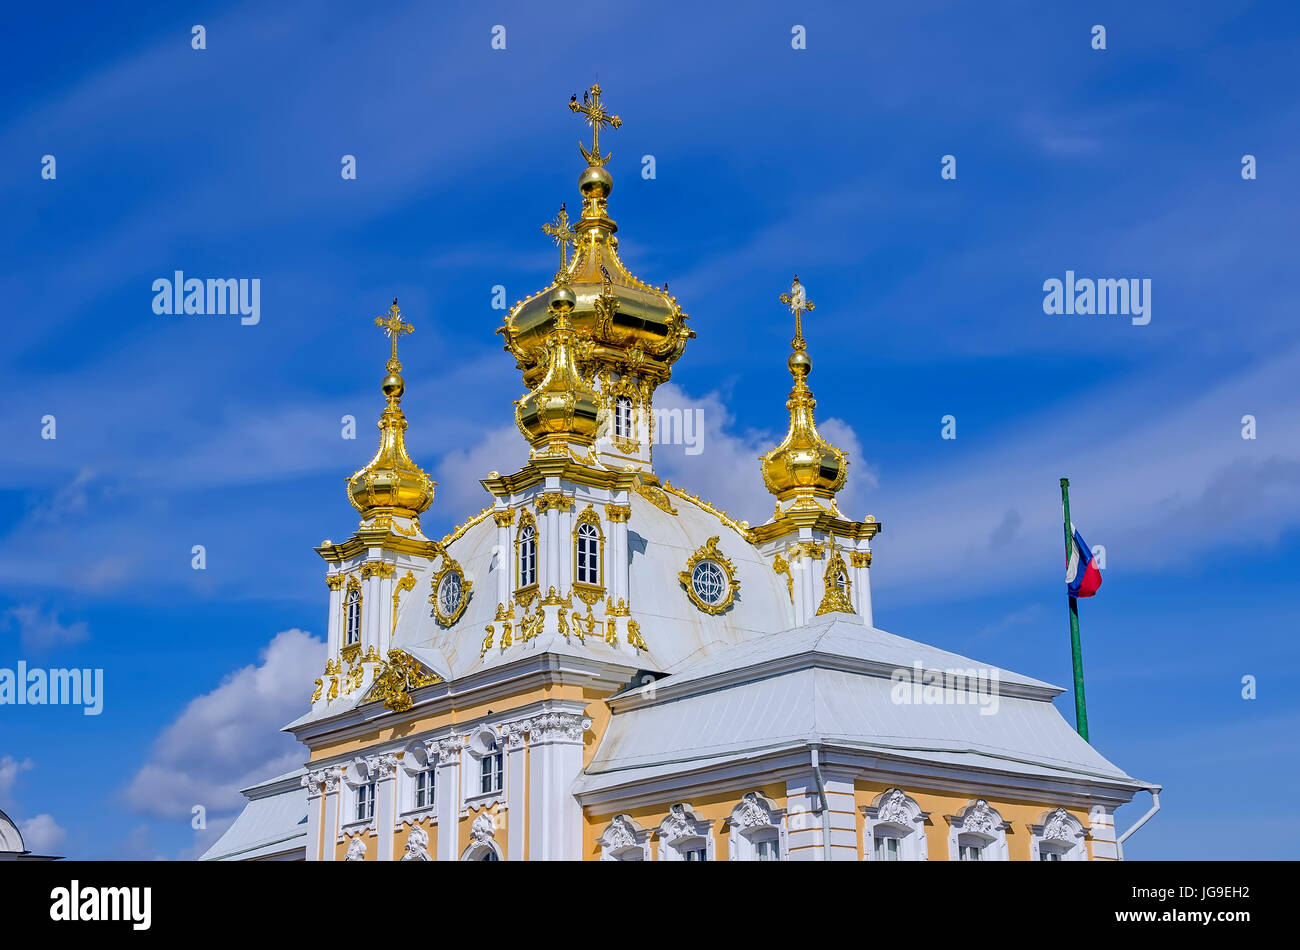 Dômes dorés Peterhof Palace de l'église au Grand Palace situé près de Saint Petersburg, Russie Banque D'Images